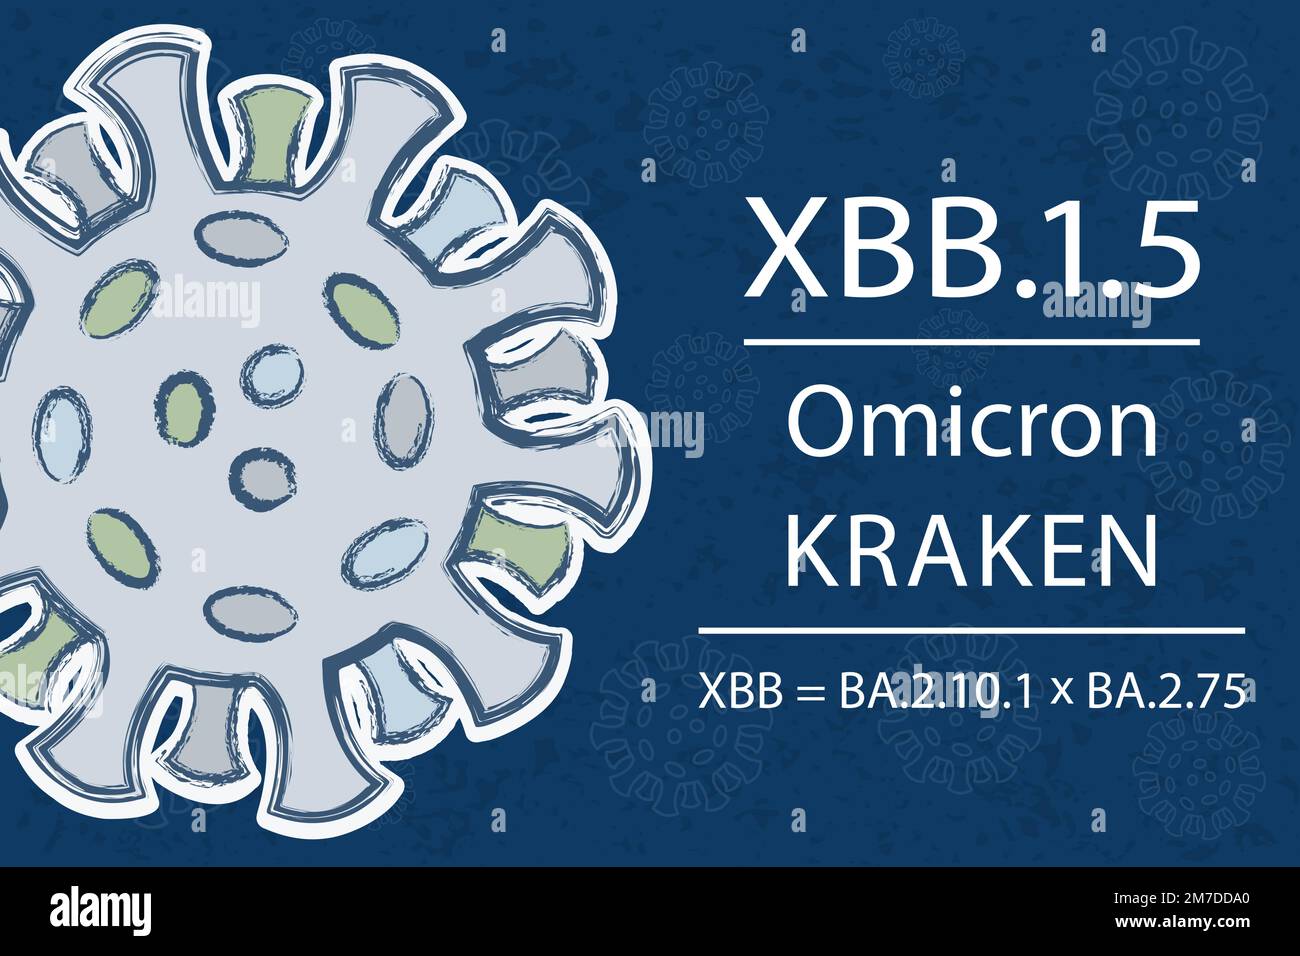 Une nouvelle sous-variante du coronavirus XBB.1,5, également connue sous le nom de 'Kraken', qui est une relative de la variante XBB (recombinante de BA.2.10.1 et BA.2,75). Texte blanc o Illustration de Vecteur